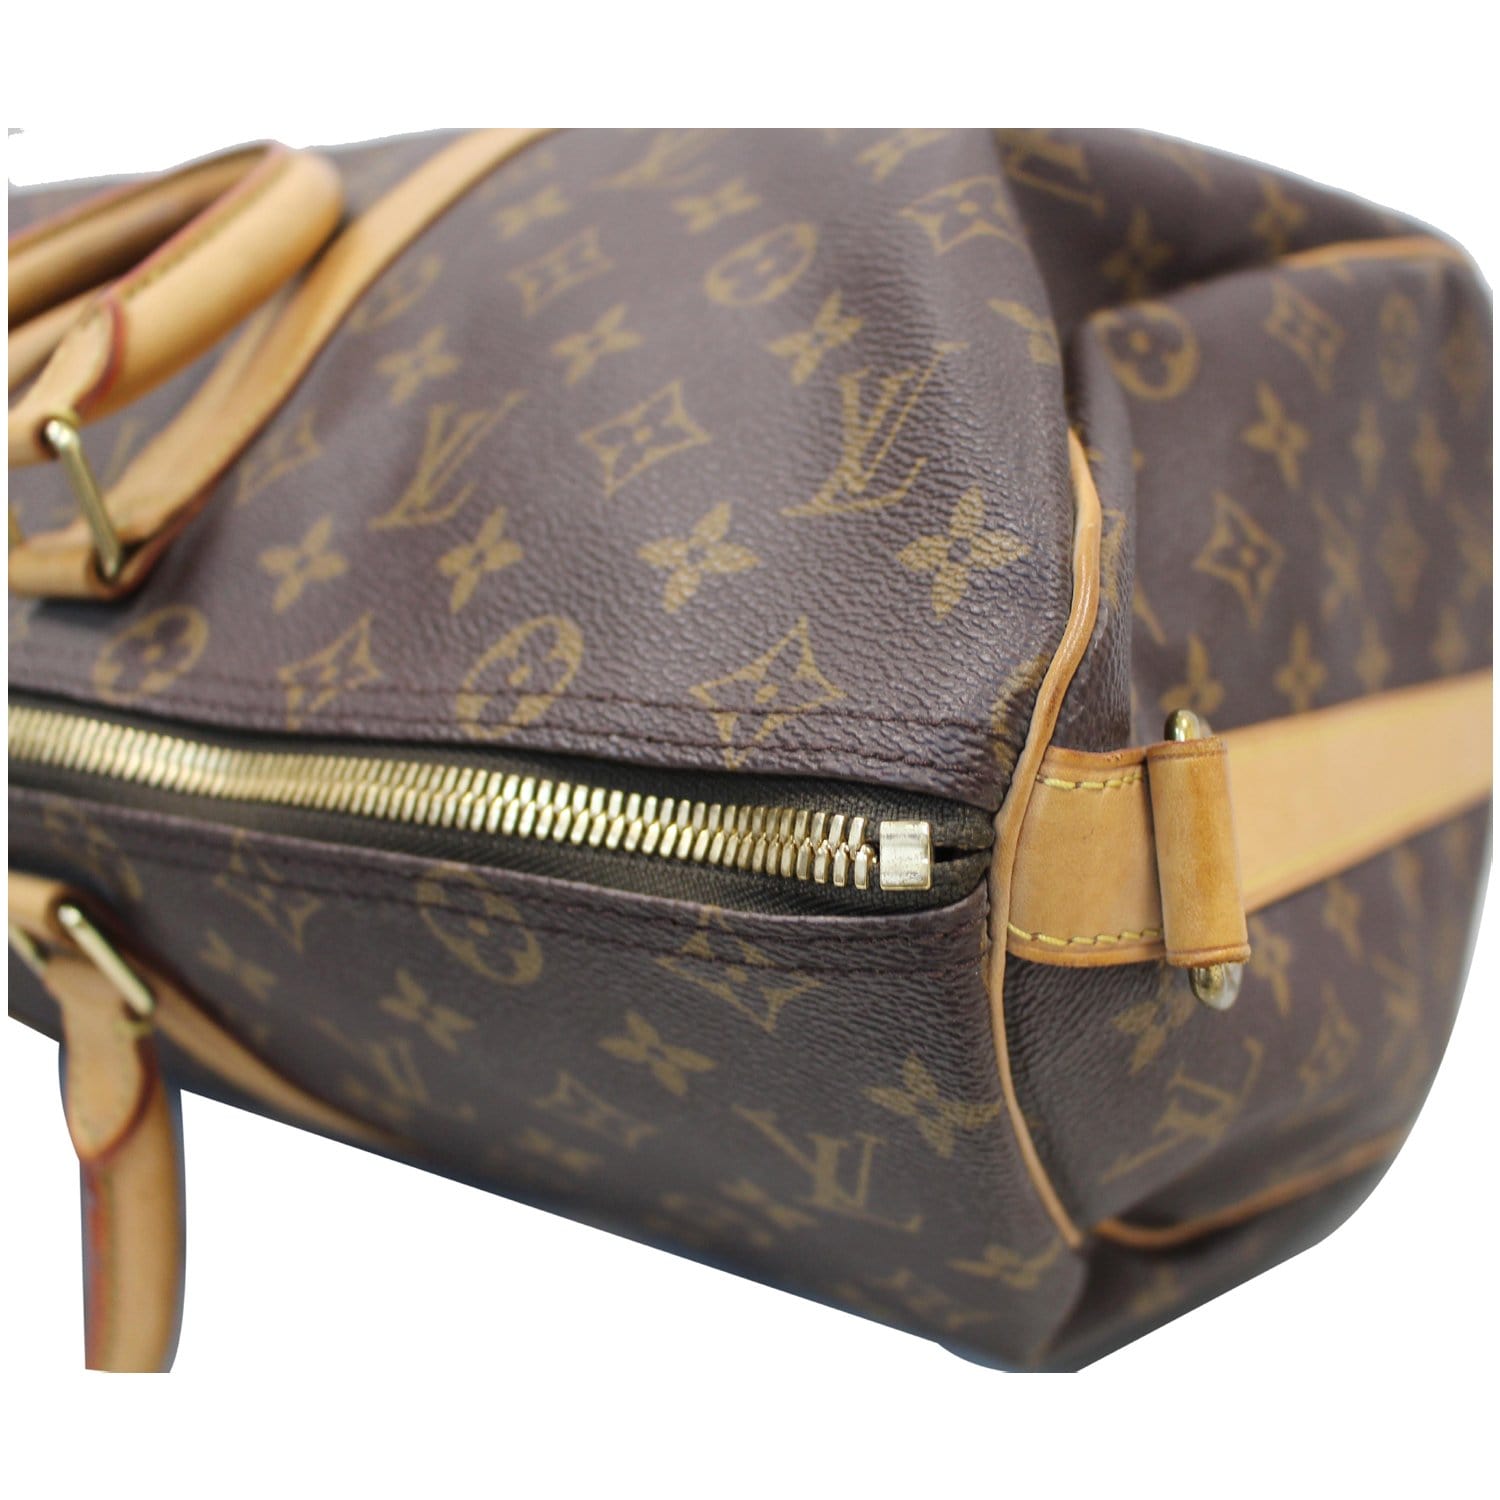 Louis Vuitton - Keepall Bandoulière 45 - Brown - Monogram Canvas - Men - Travel Bag - Luxury